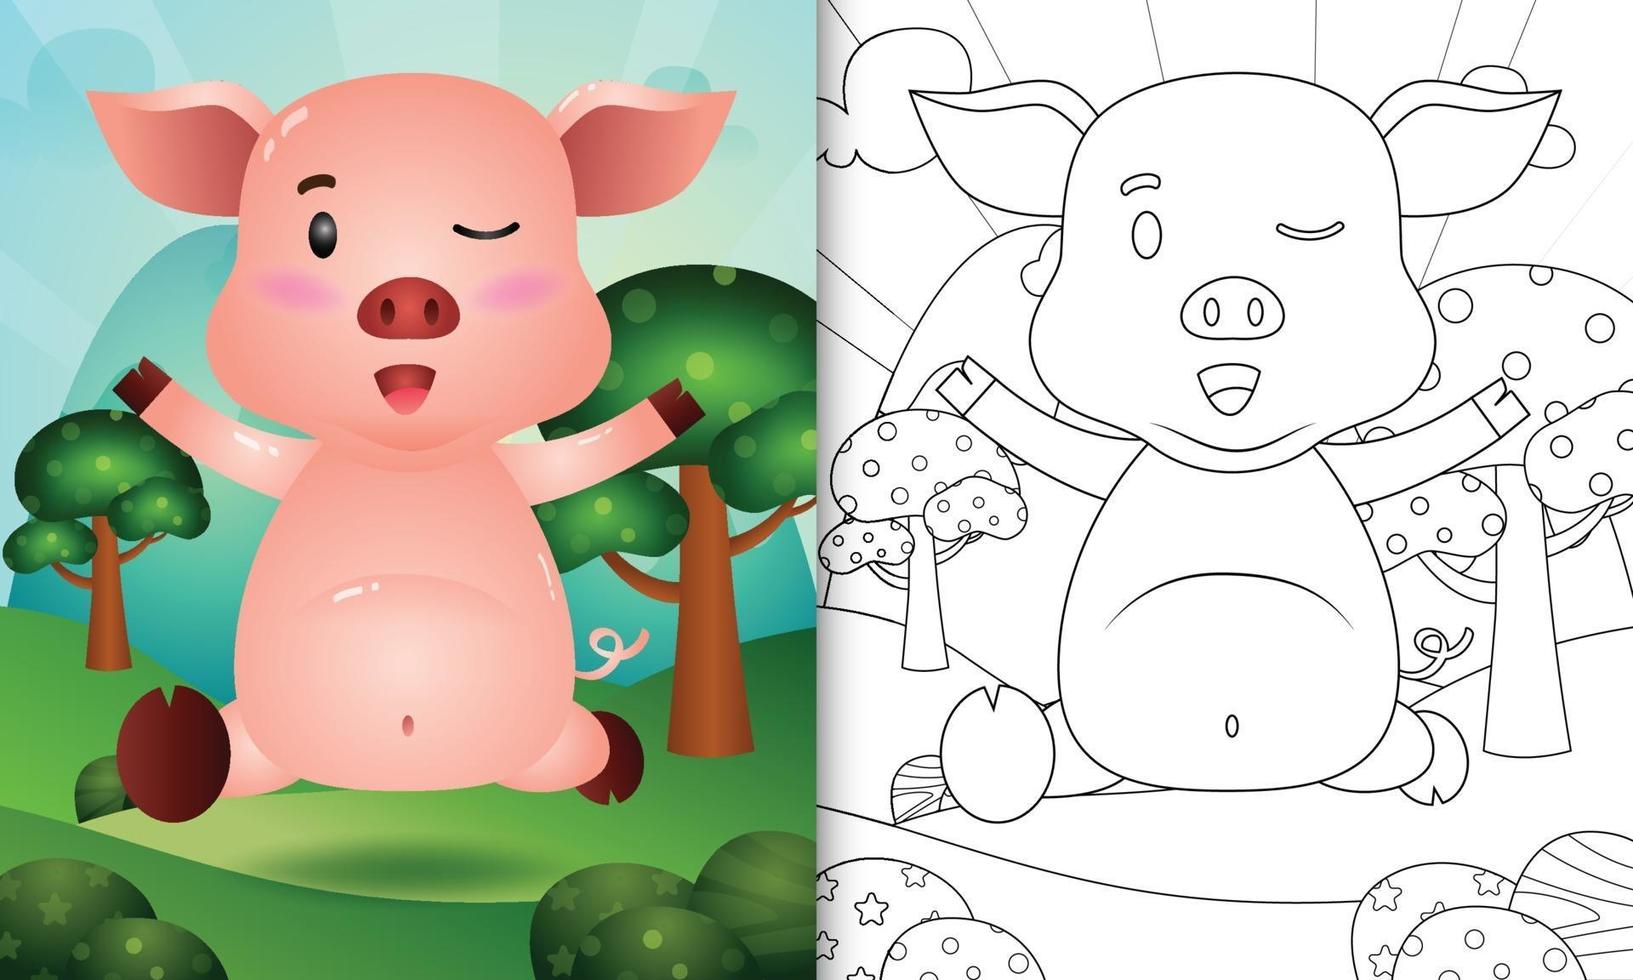 målarbok för barn med en söt gris karaktär illustration vektor